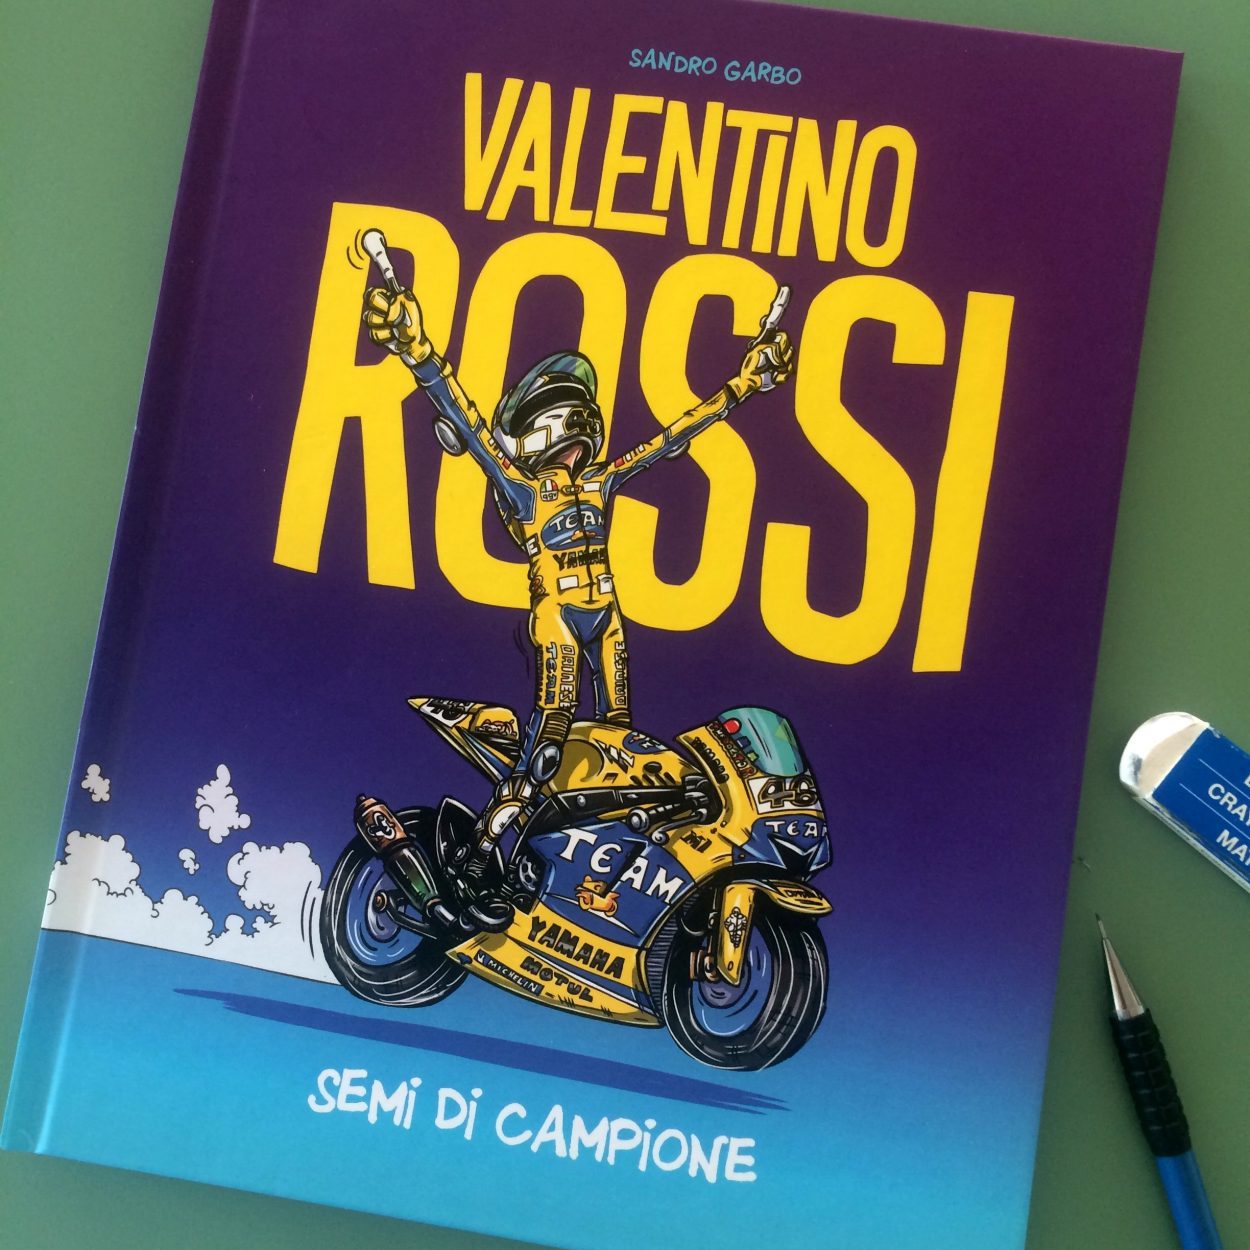 Sandro Garbo presenta "Semi di Campione", la nuova Graphic Novel su Valentino Rossi